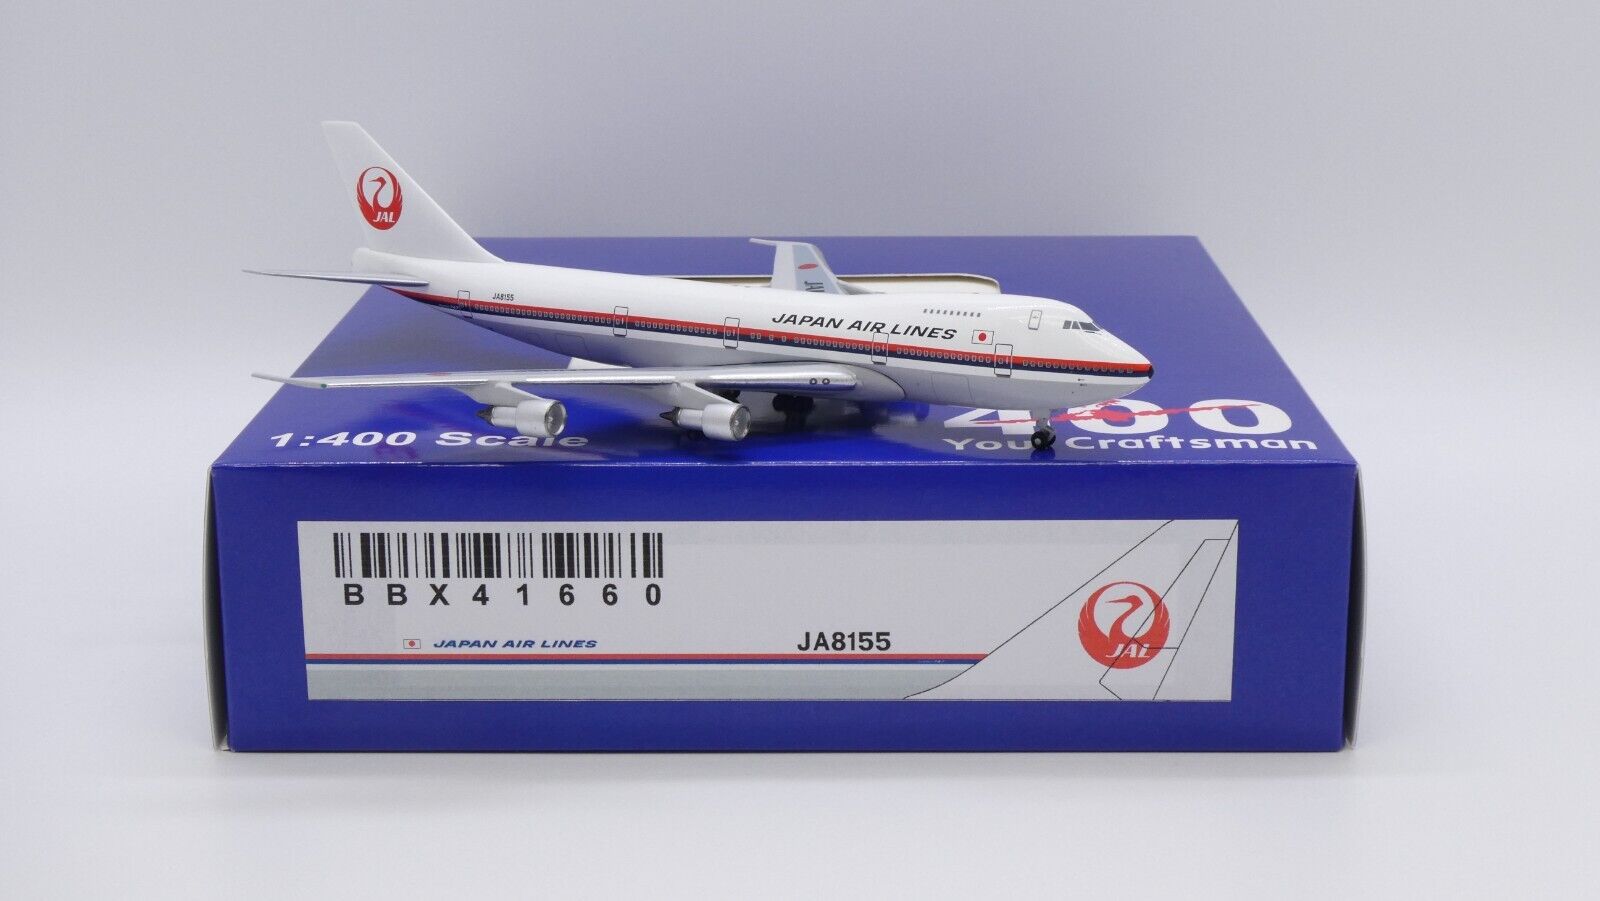 Japan Airlines B747-200 Reg: JA8155 1:400 Aeroclassics Diecast BBX41660 (E)